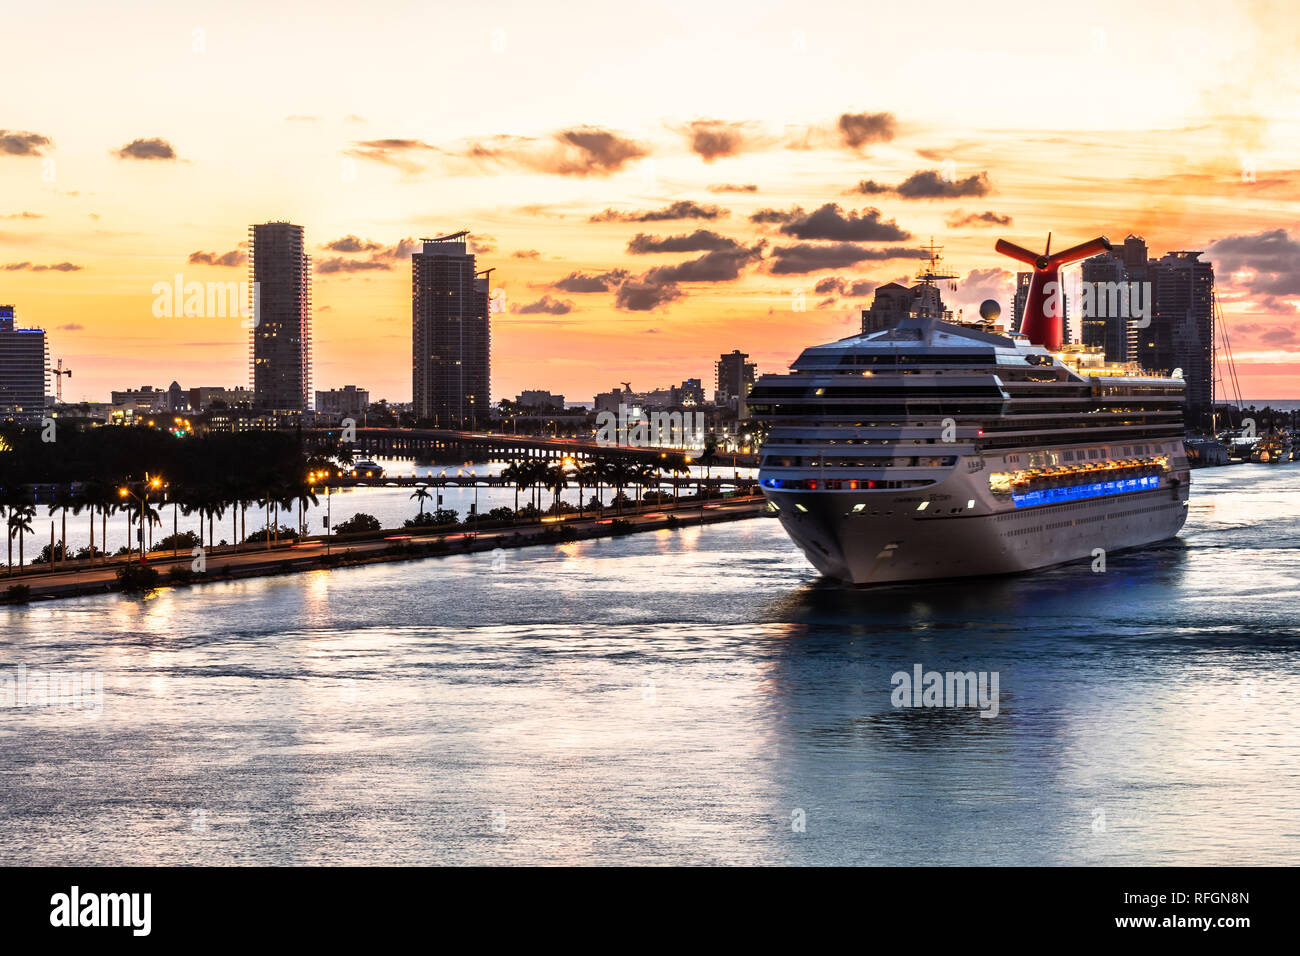 Miami, Floride - 19 novembre 2018 : sunrise incroyable vue sur l'horizon de la ville de Miami avec Carnival bateau de croisière naviguant dans le Port de Miami Banque D'Images